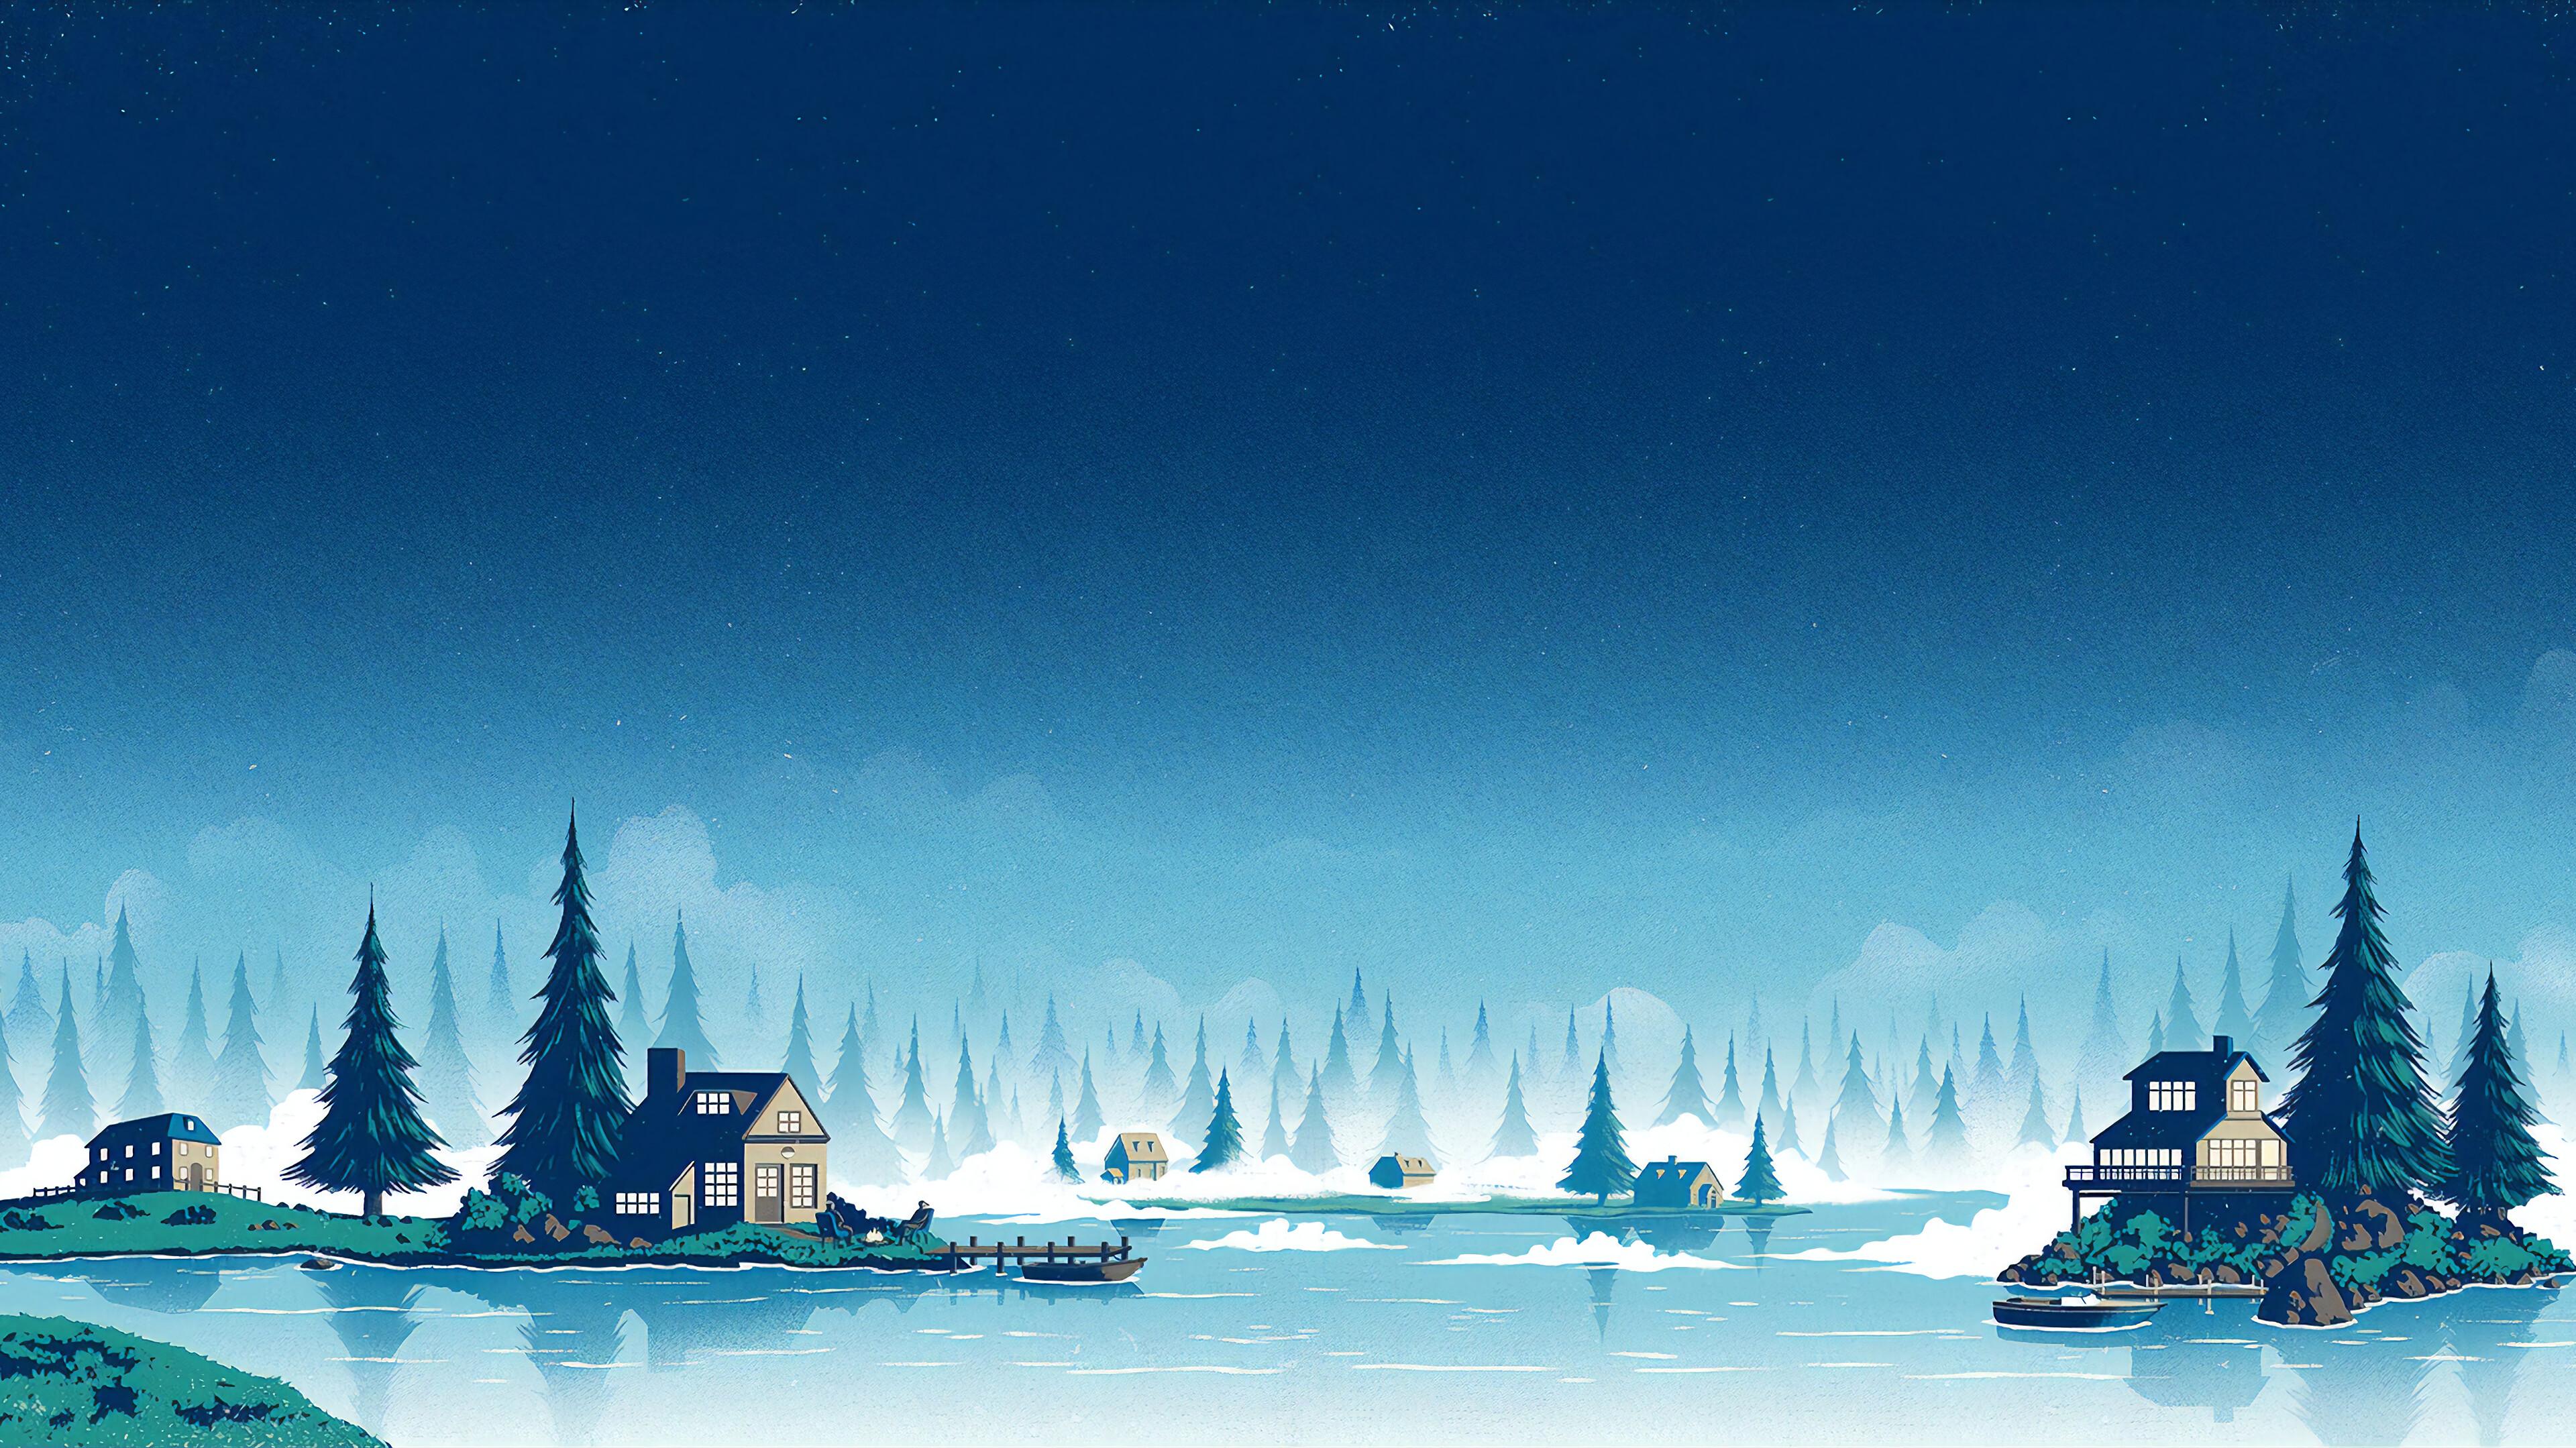 Winter Scenery Minimalist Night Landscape Digital Art 4K Wallpaper